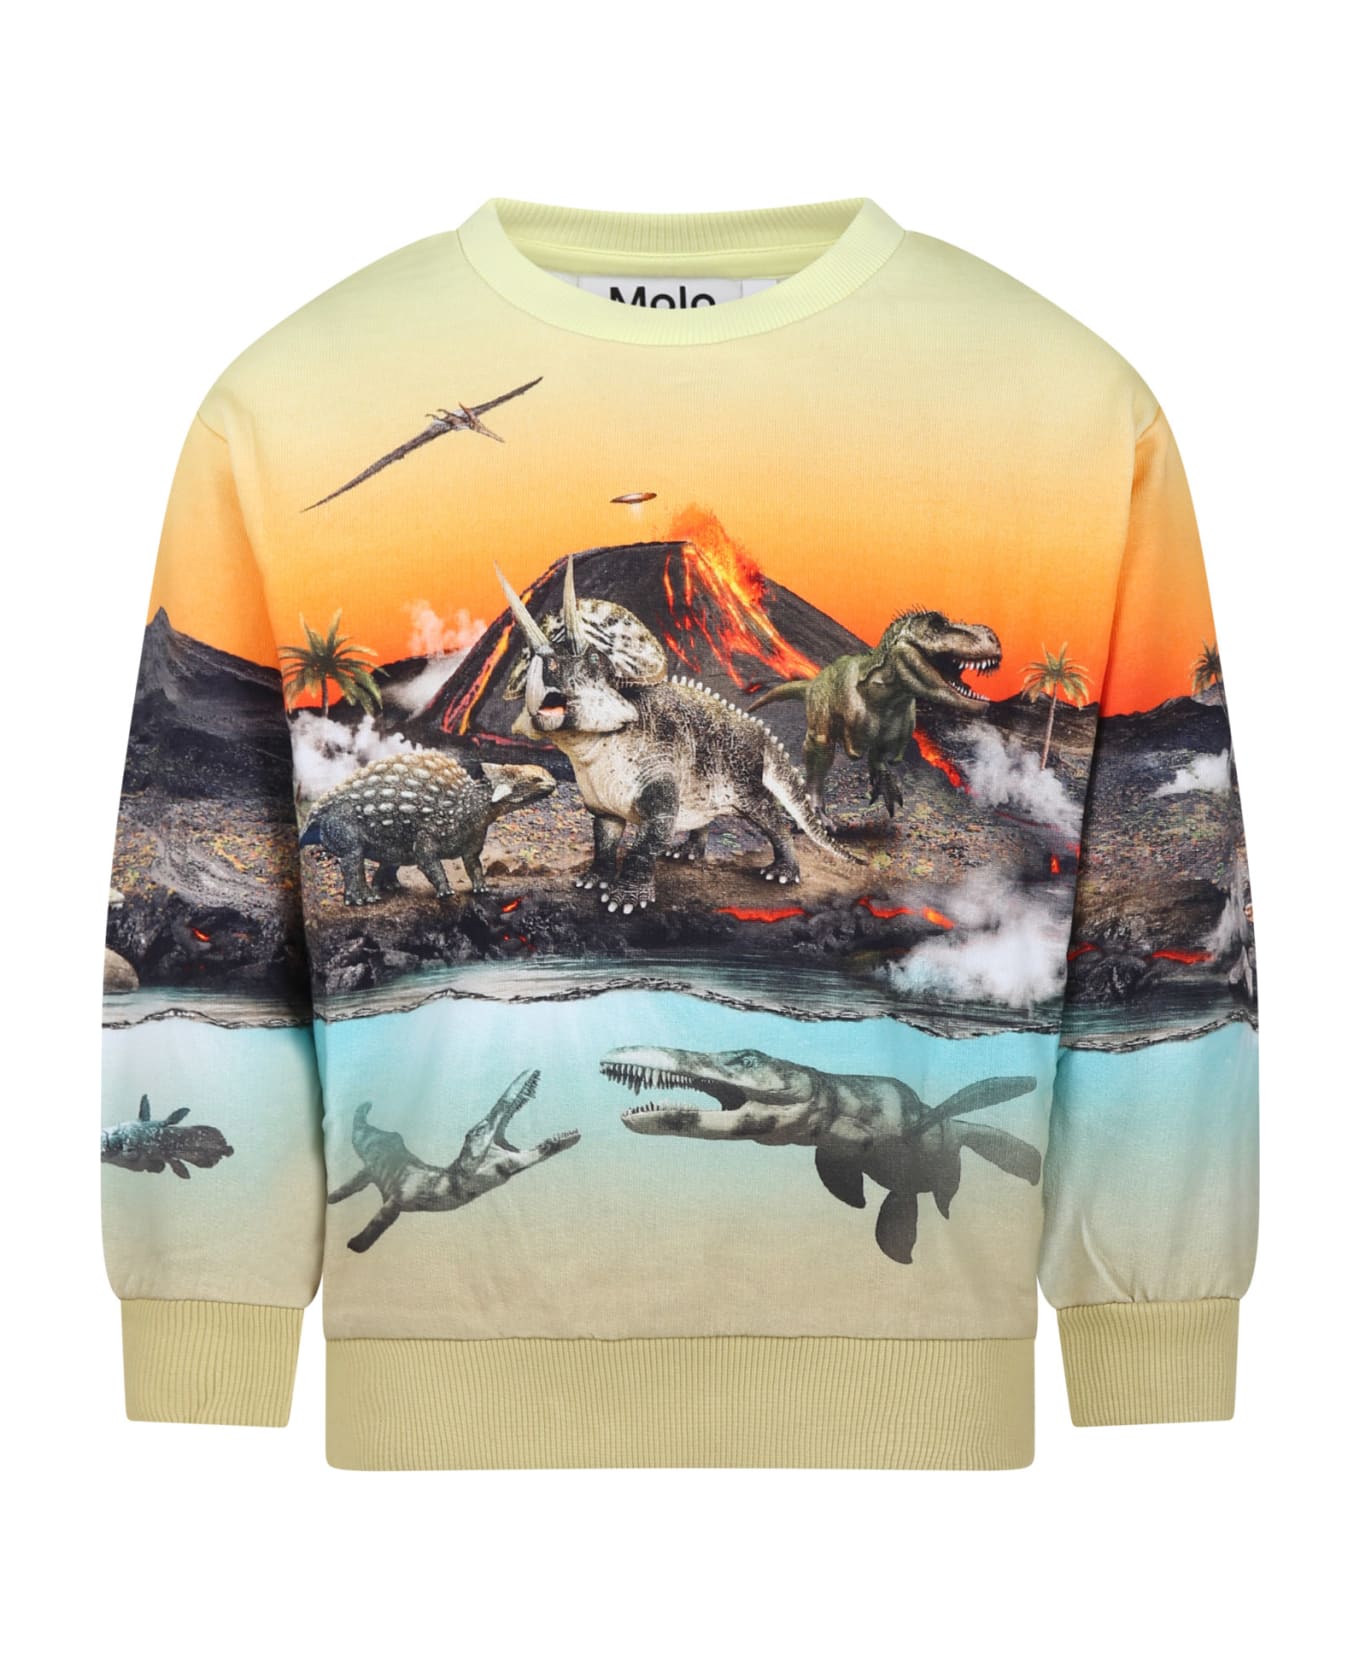 Molo Orange Sweatshirt For Boy With Dinosaur Print - Multicolor